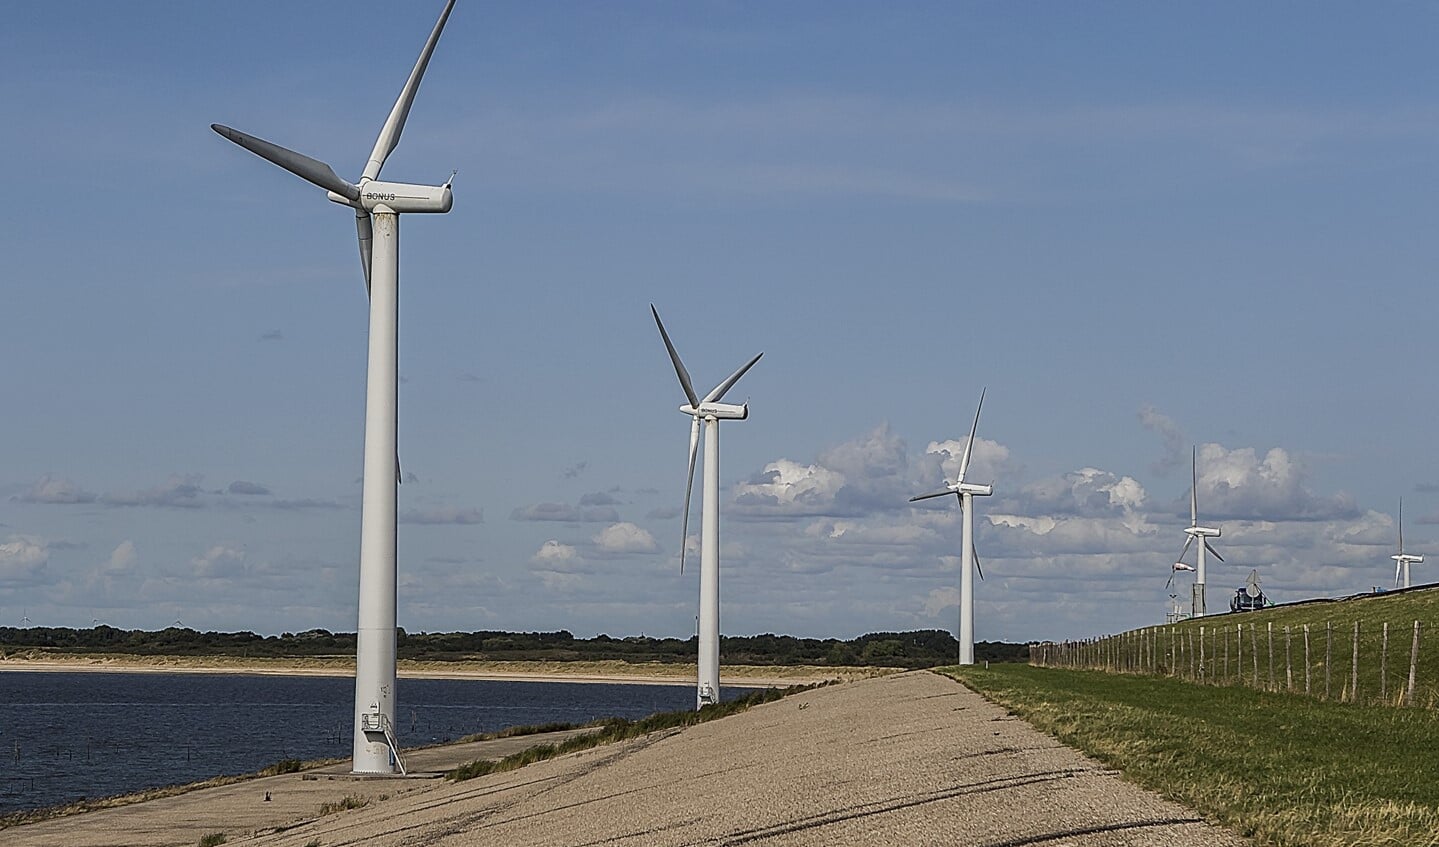 Deze zes windmolens aan de buitenzijde van de Haringvlietdam zouden vervangen moeten worden door twee megawindturbines aan de binnenzijde van de dam om zo 12 MW windenergie op te kunnen wekken. 